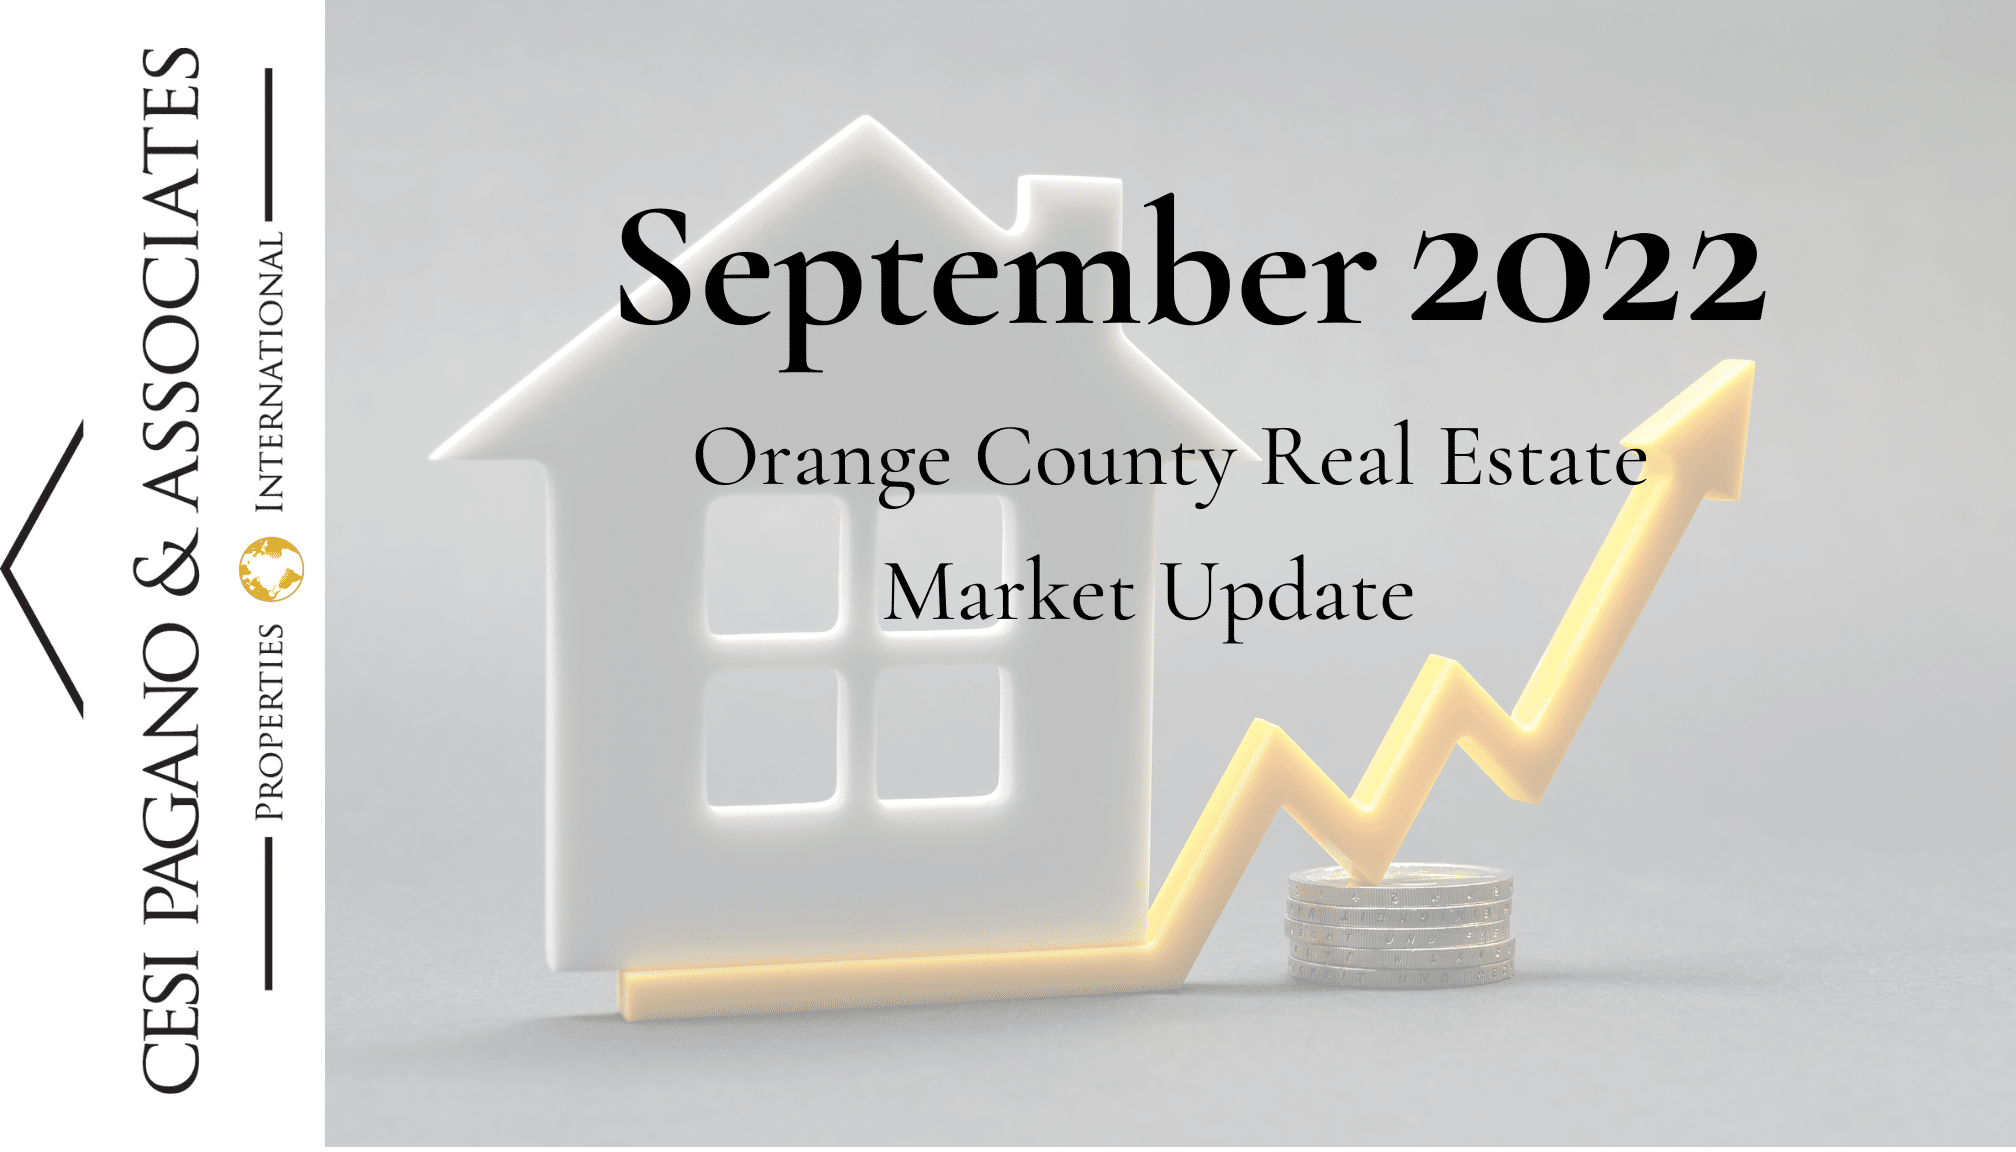 Orange County Real Estate Market Update September 2022